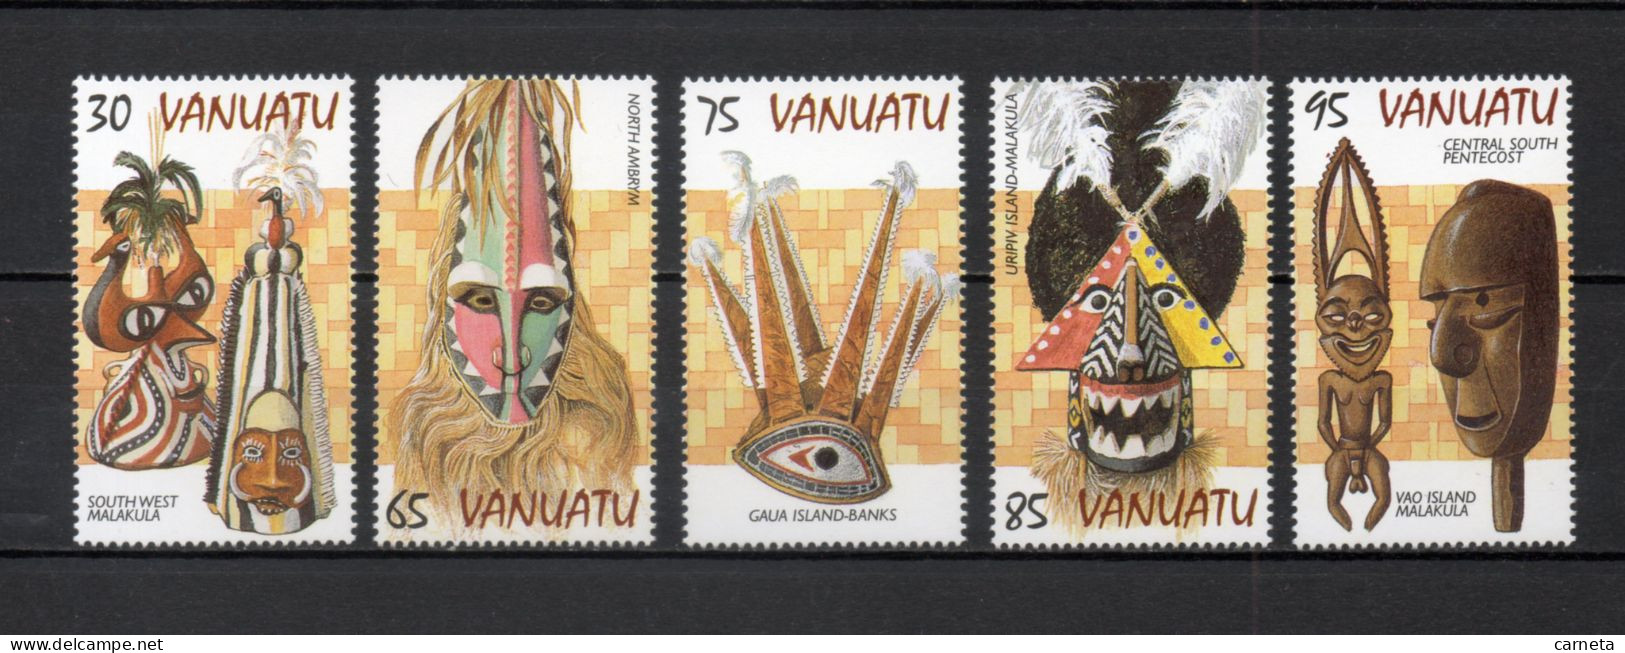 VANUATU  N° 1048 à 1052    NEUFS SANS CHARNIERE  COTE  10.00€    MASQUE - Vanuatu (1980-...)